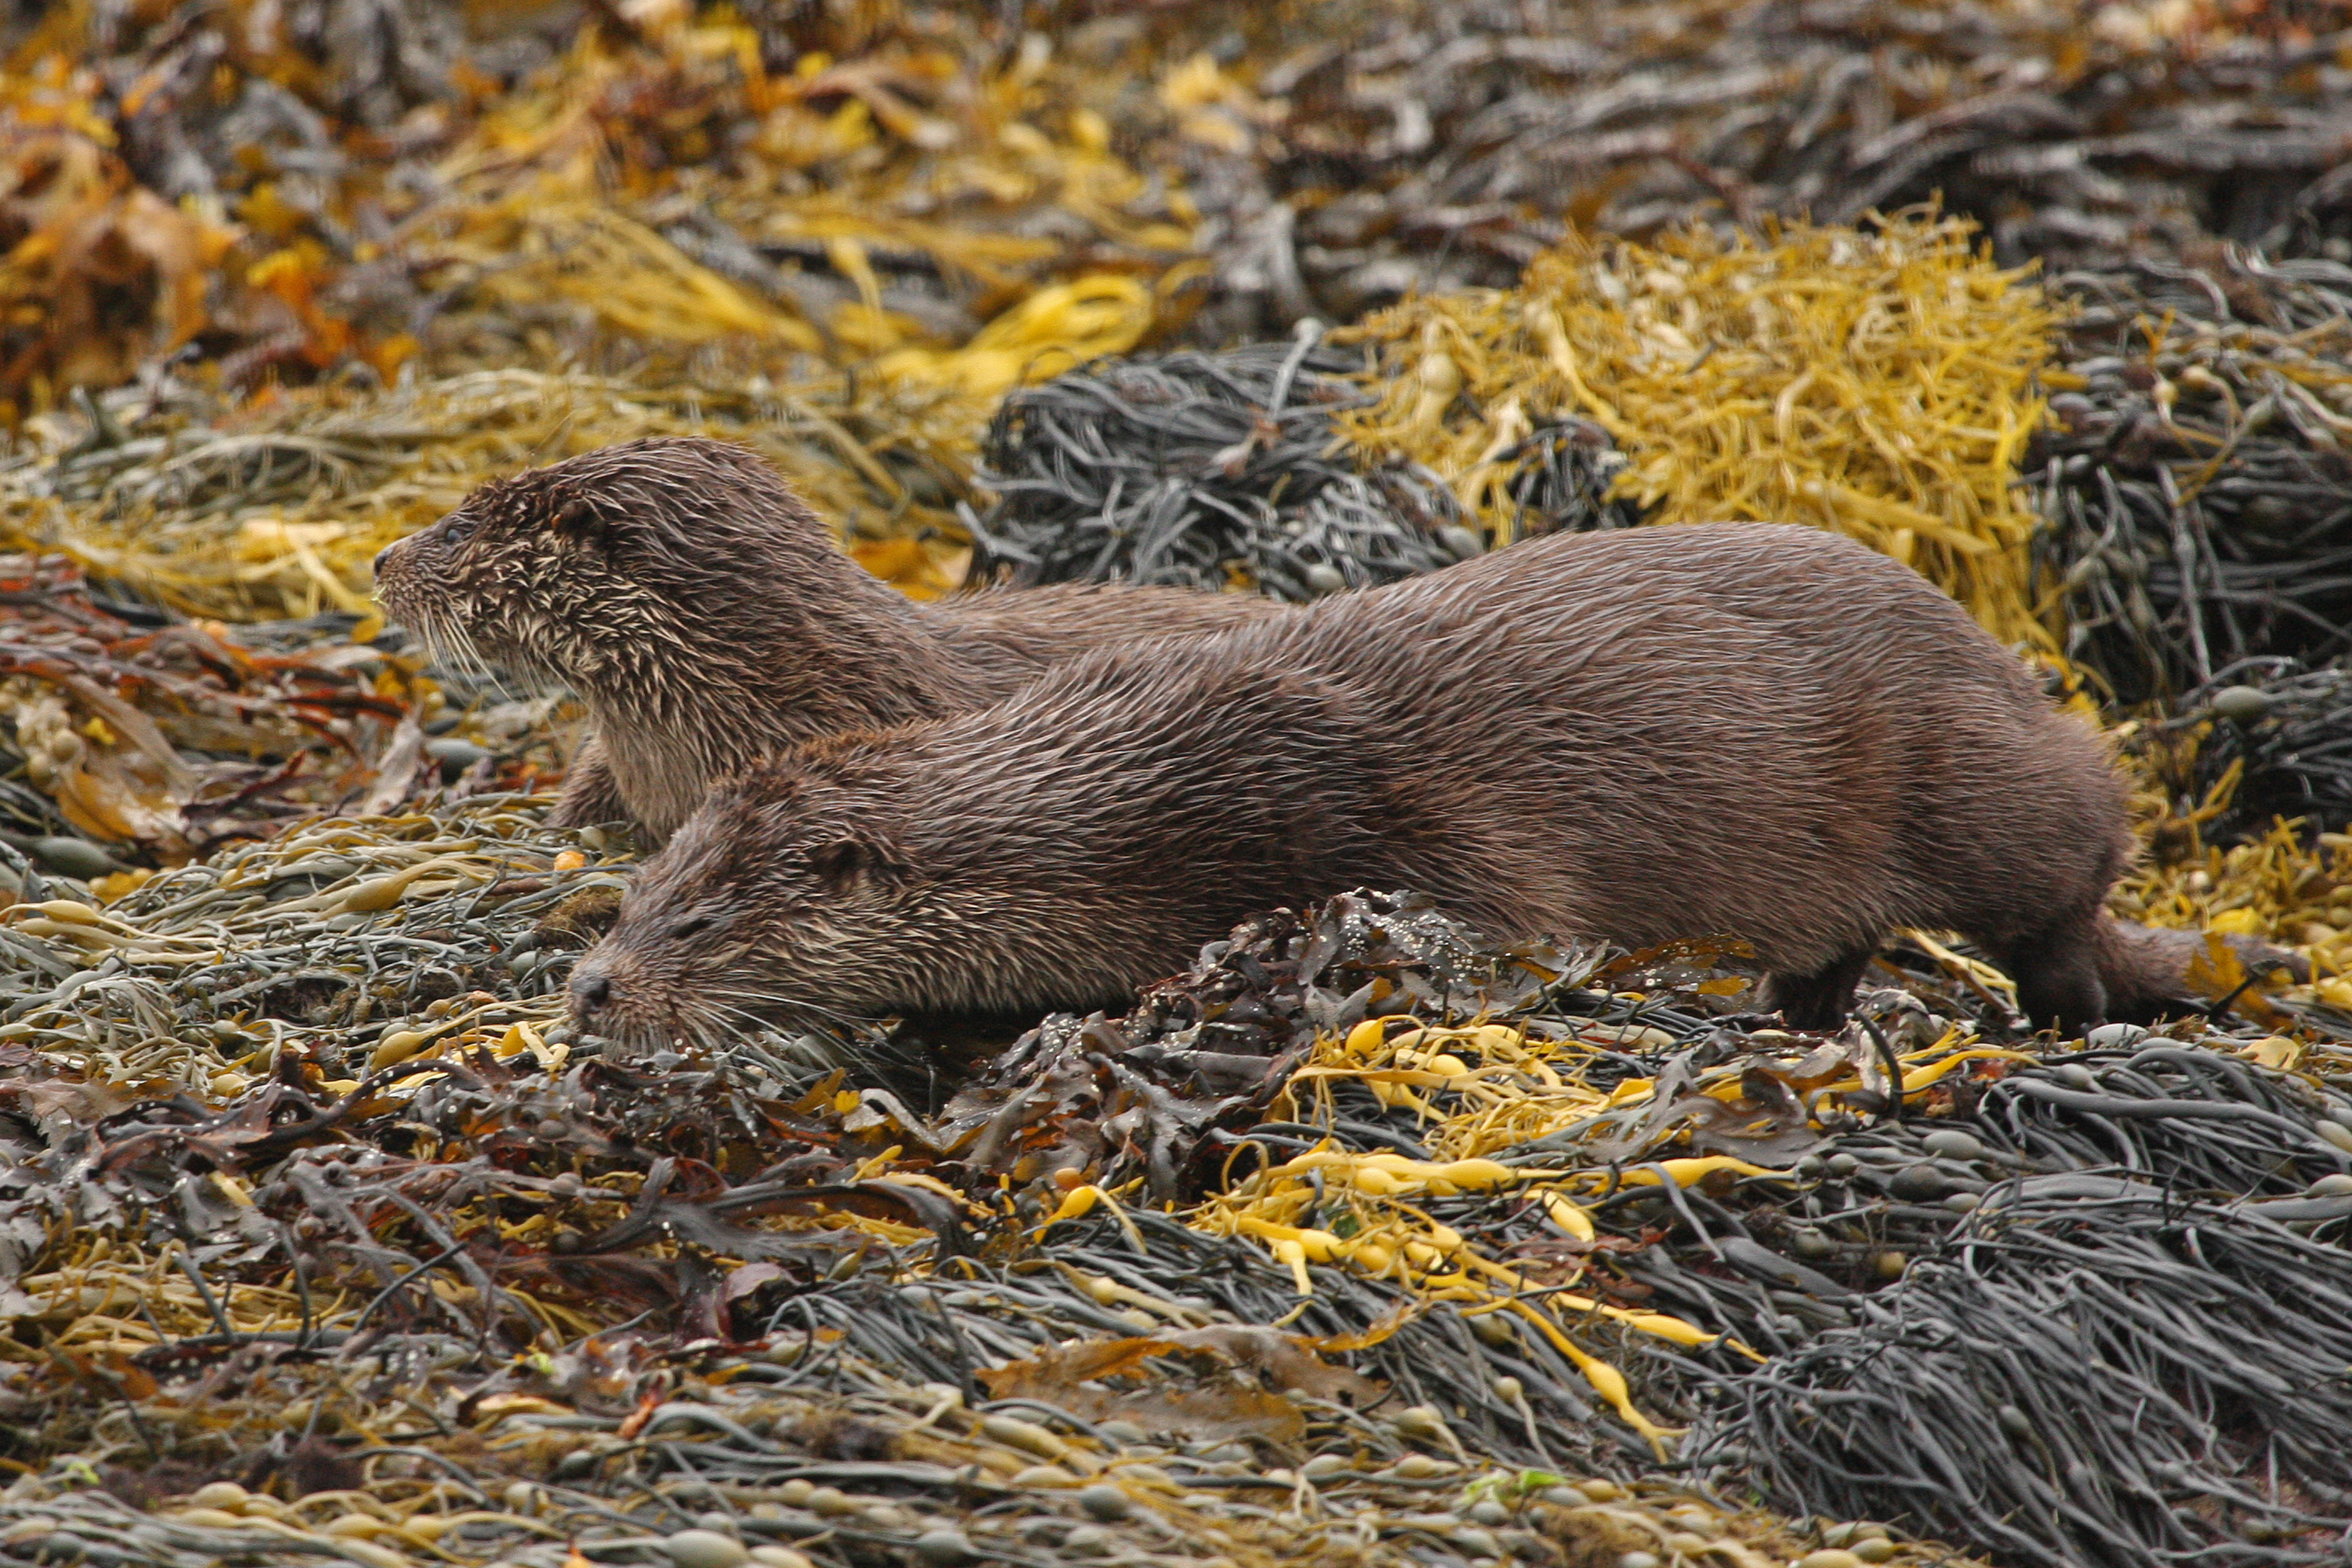 Two otters in seaweed (sideways view)